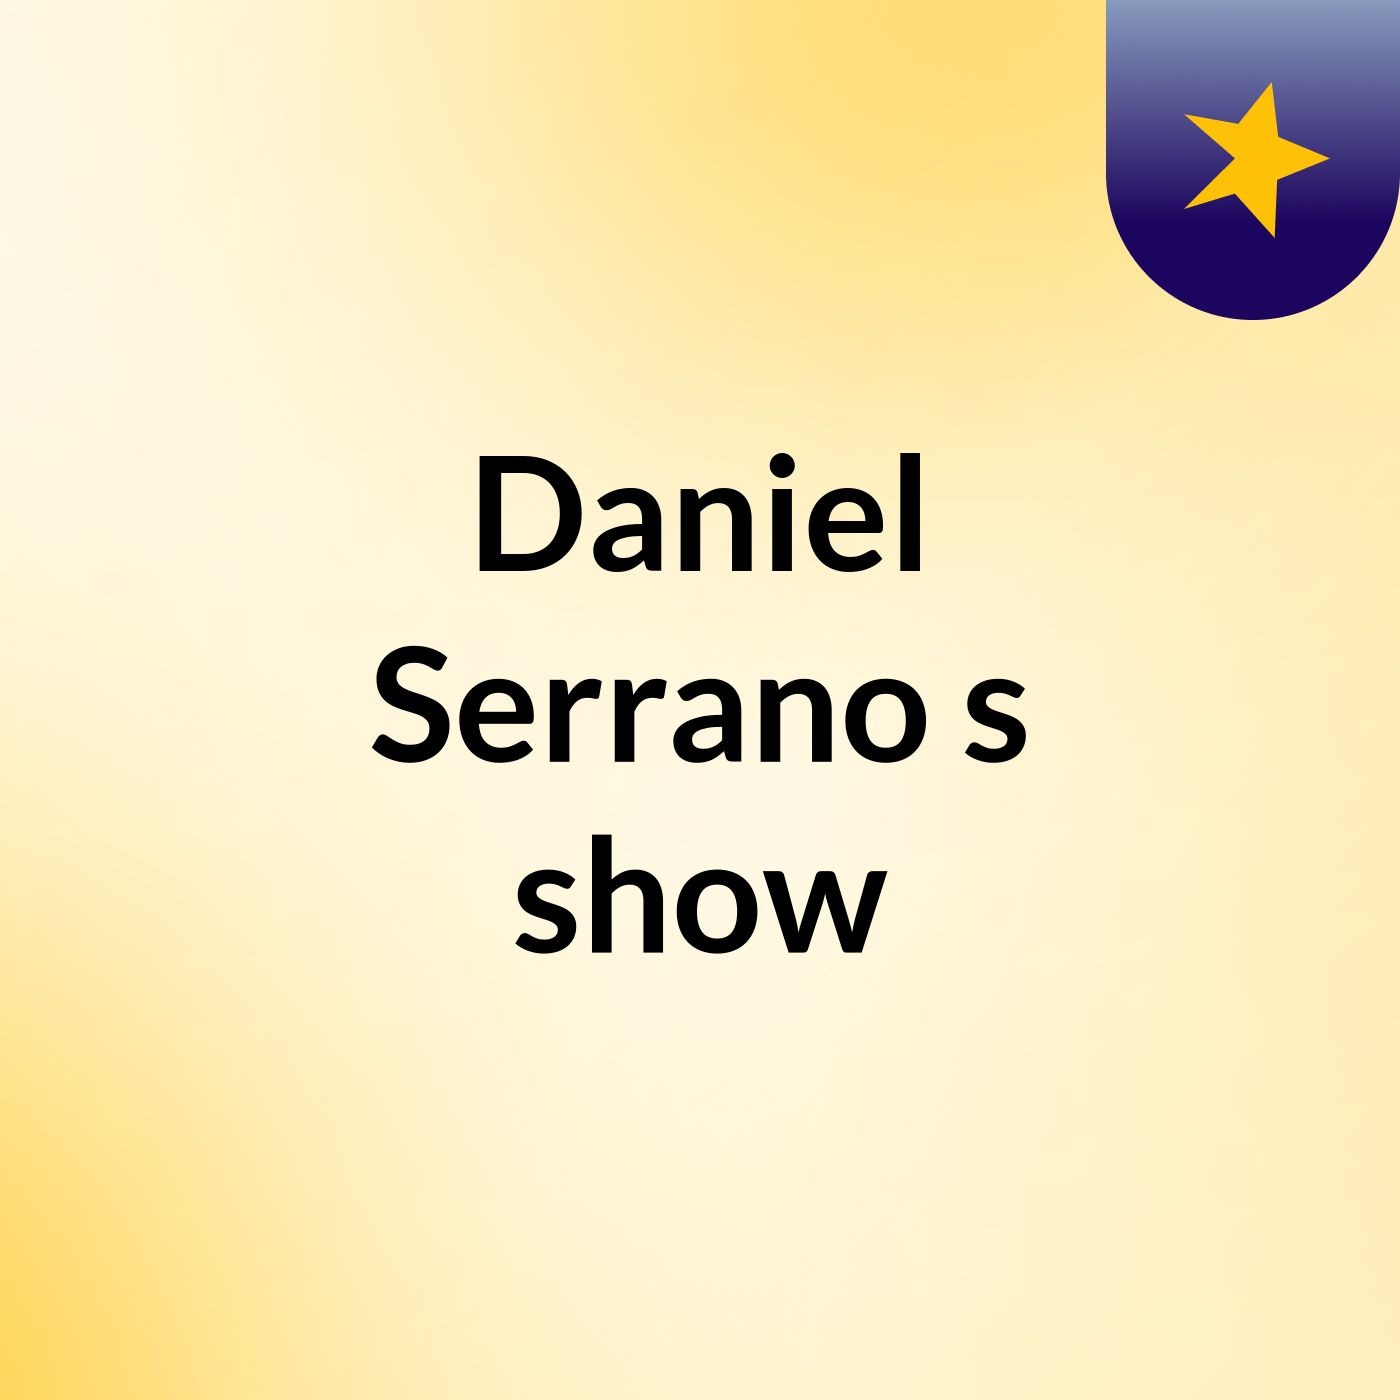 Daniel Serrano's show